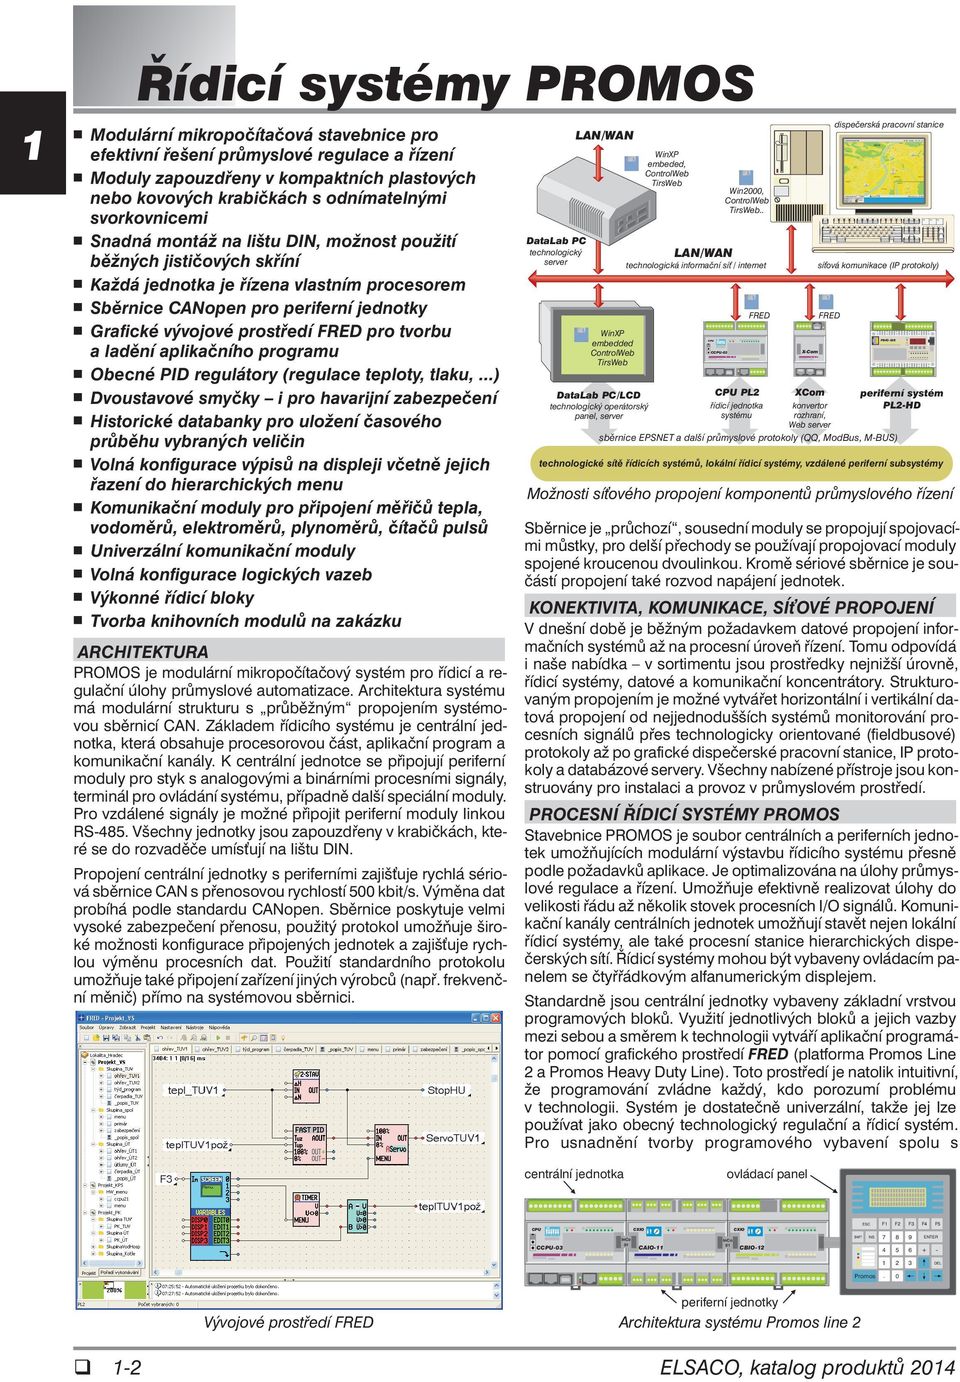 Grafické vývojové prostředí FRED pro tvorbu a ladění aplikačního programu Obecné PID regulátory (regulace teploty, tlaku,.